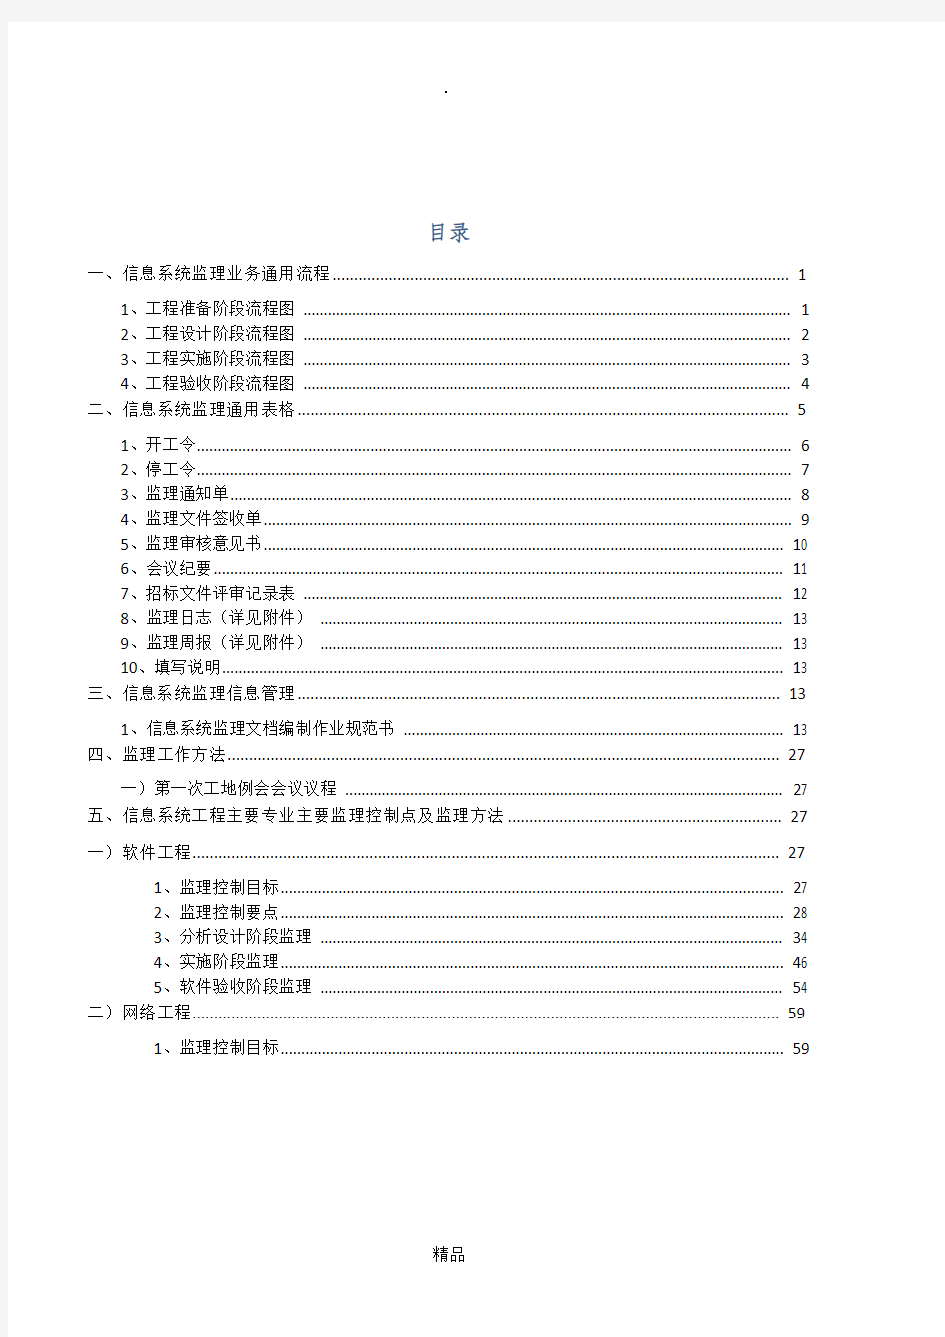 信息系统监理作业指导书1.0